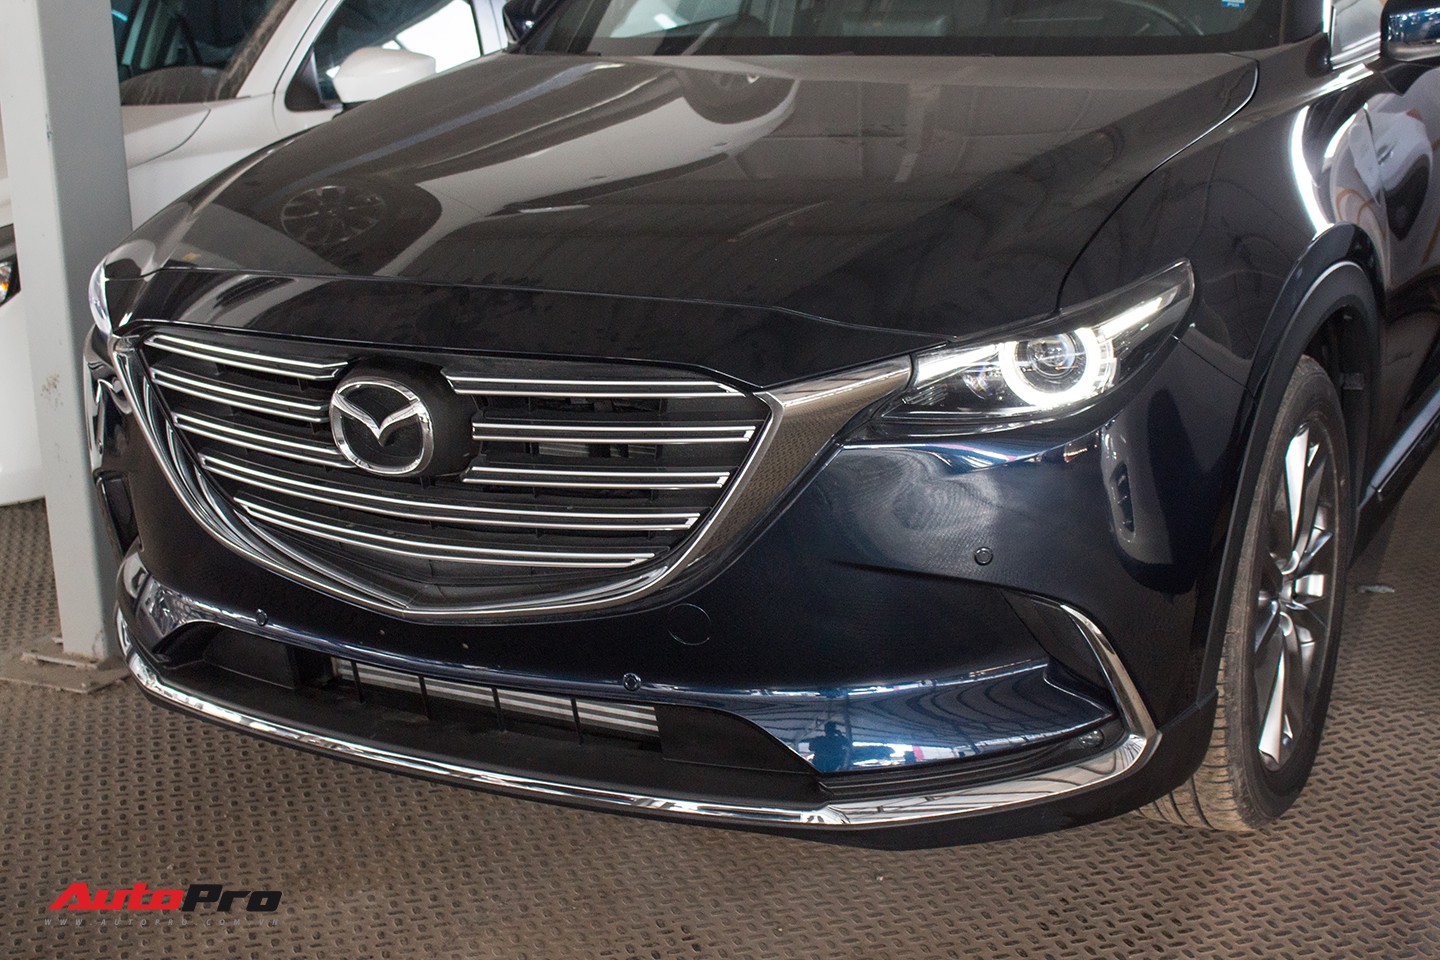 Giá xe sang Mazda CX9 hơn 2 tỷ sau 9 năm rớt xuống 700 triệu